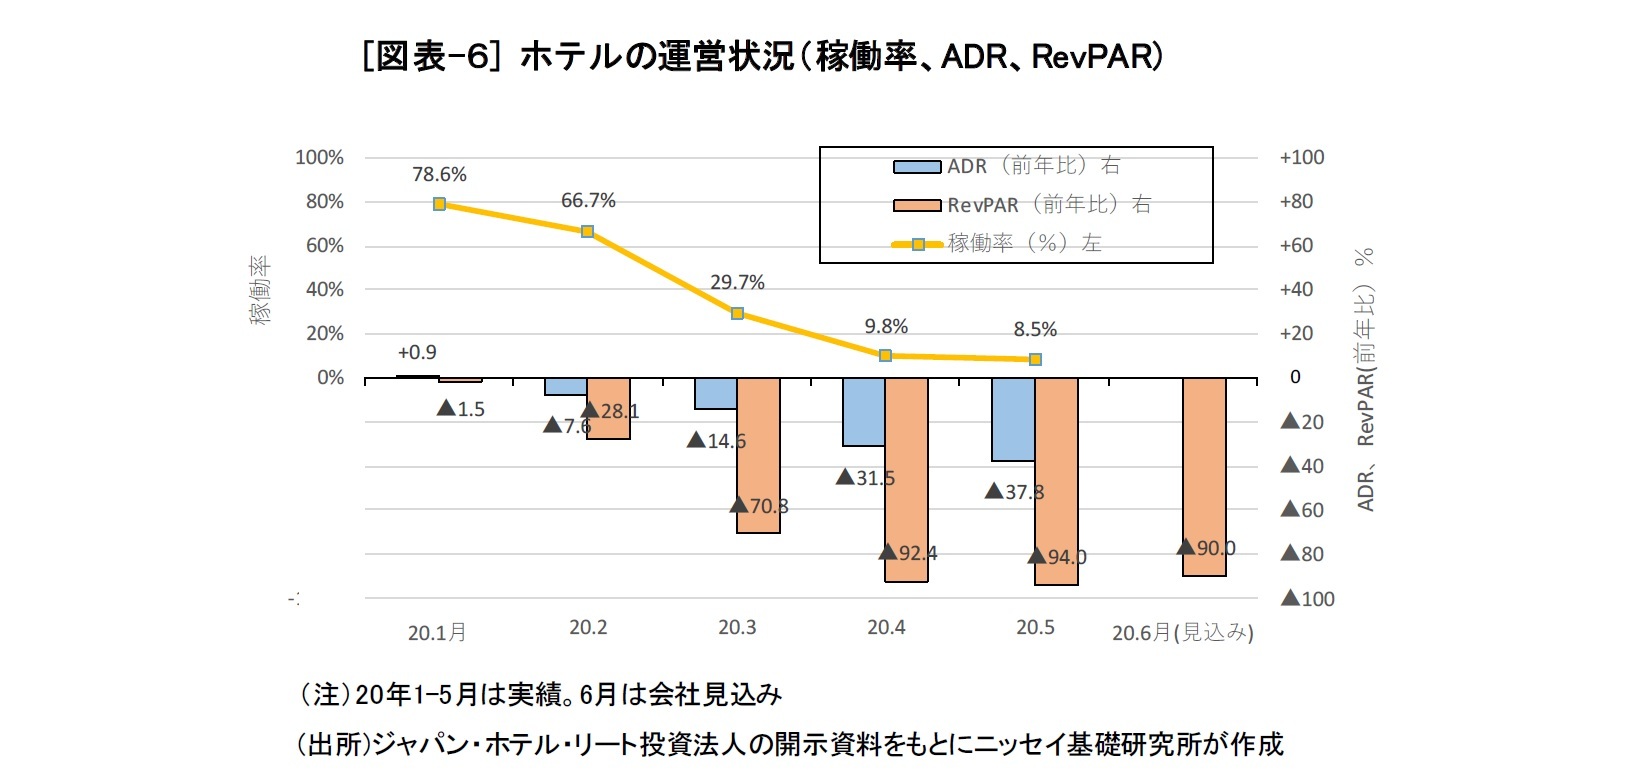 [図表-６] ホテルの運営状況（稼働率、ADR、RevPAR)